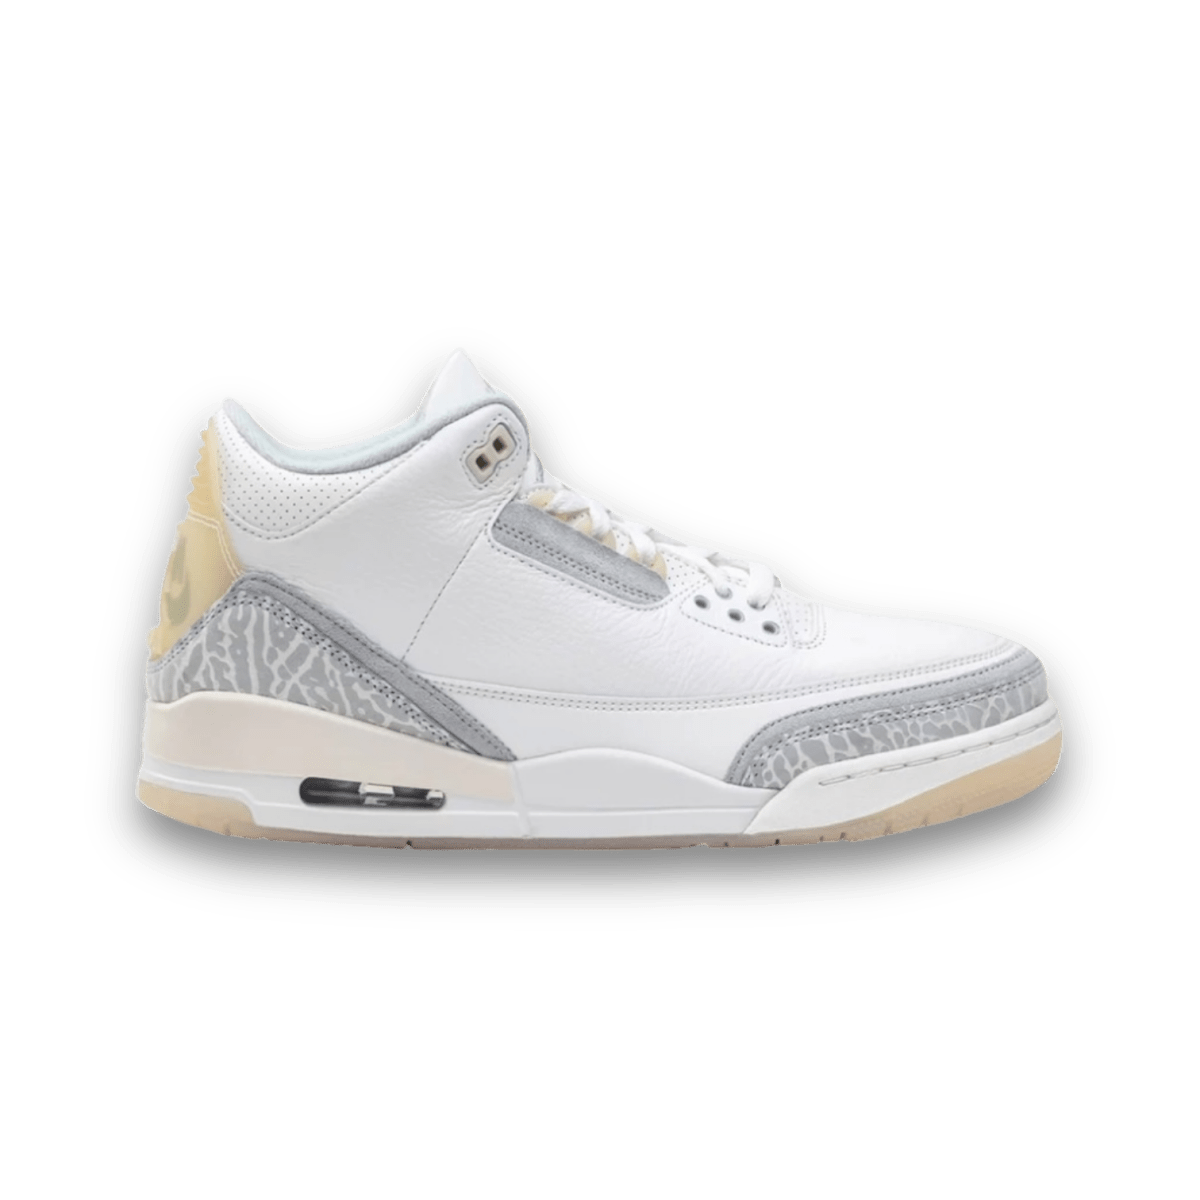 Air Jordan 3 Retro SE 'Craft - Ivory' - Unreleased - Mid Sneaker - Jordan - Jawns on Fire - sneakers